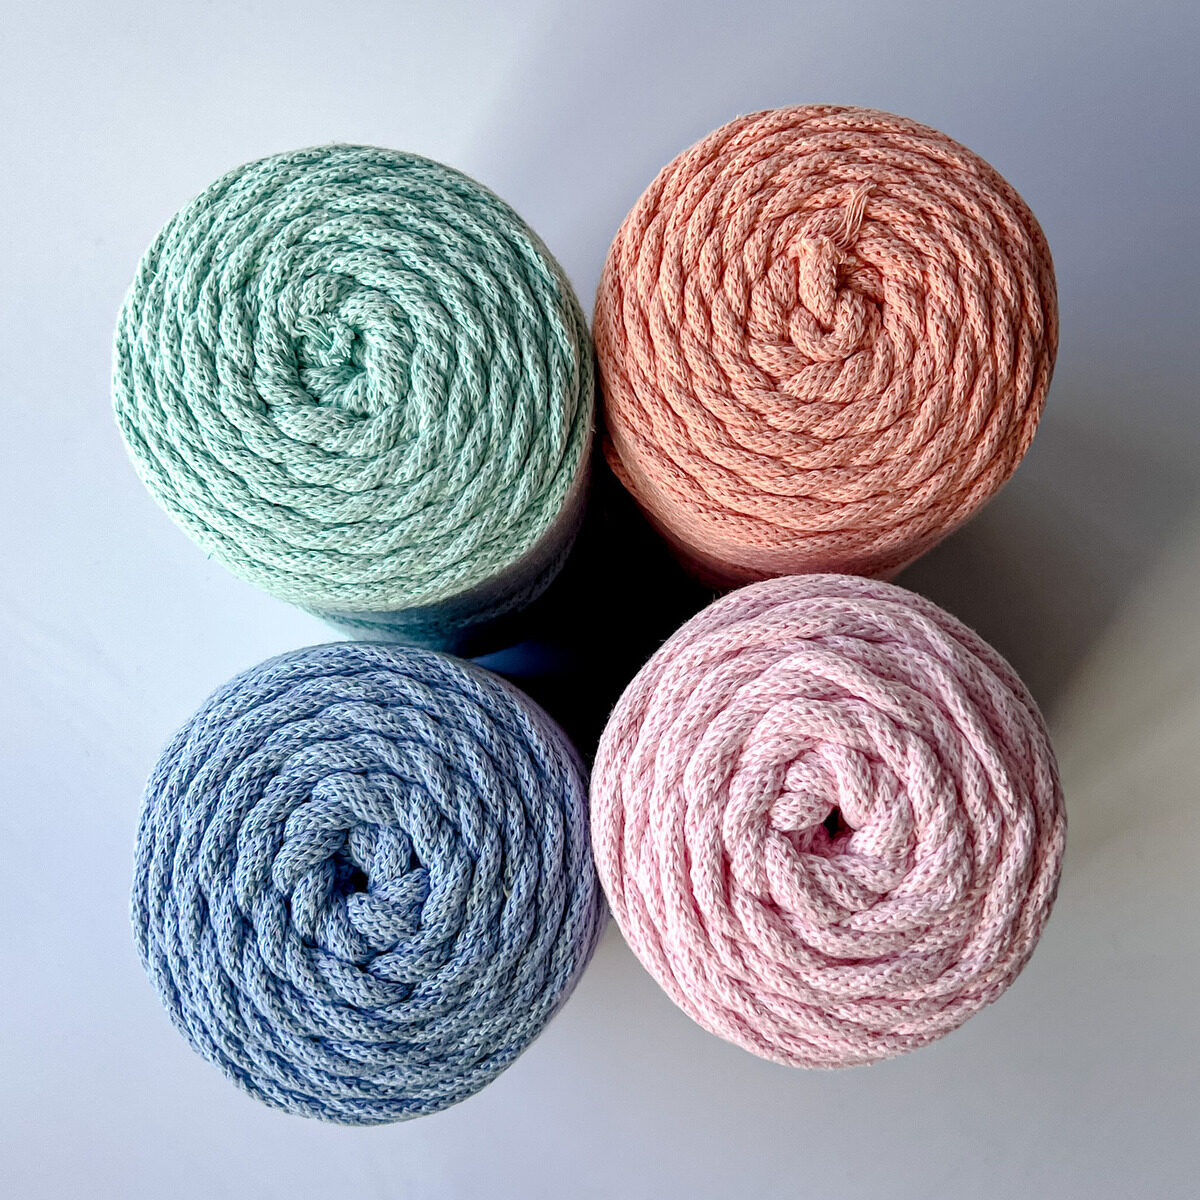 Zestaw 4 sznurków plecionych do makramy o grubości 5 mm z rdzeniem bawełnianym. Kolory: błękitny, miętowy, łososiowy, pastelowy róż.